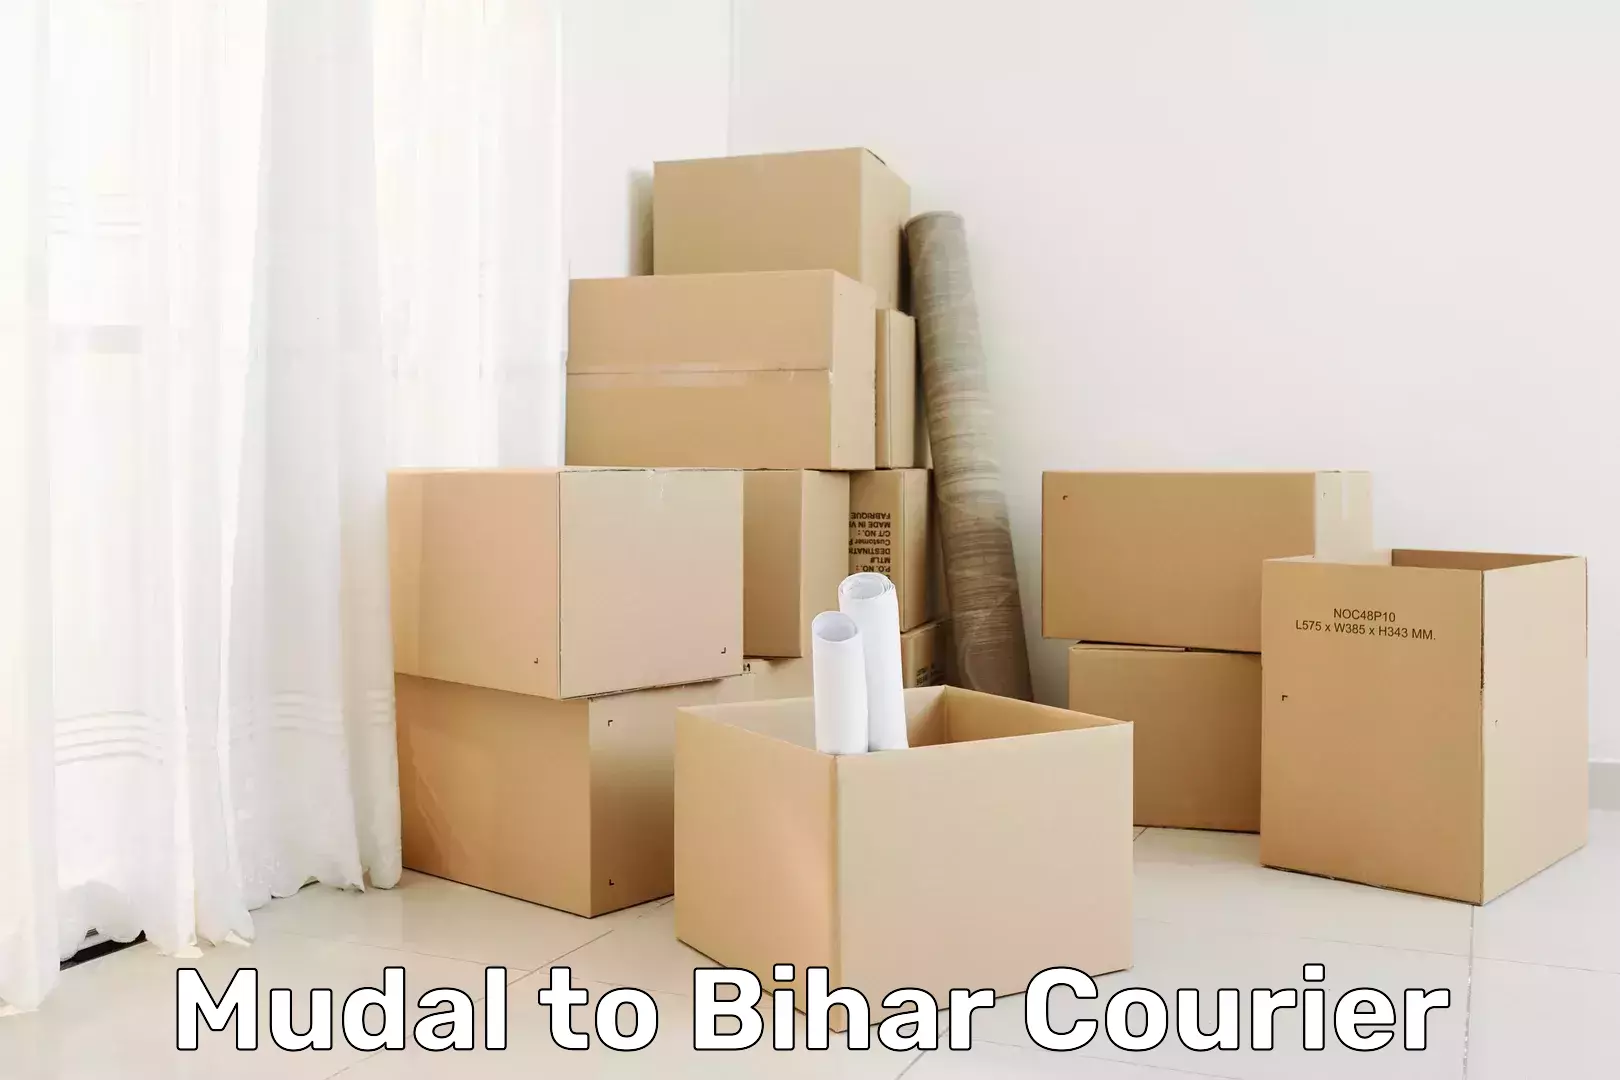 Cash on delivery service Mudal to Mahnar Bazar